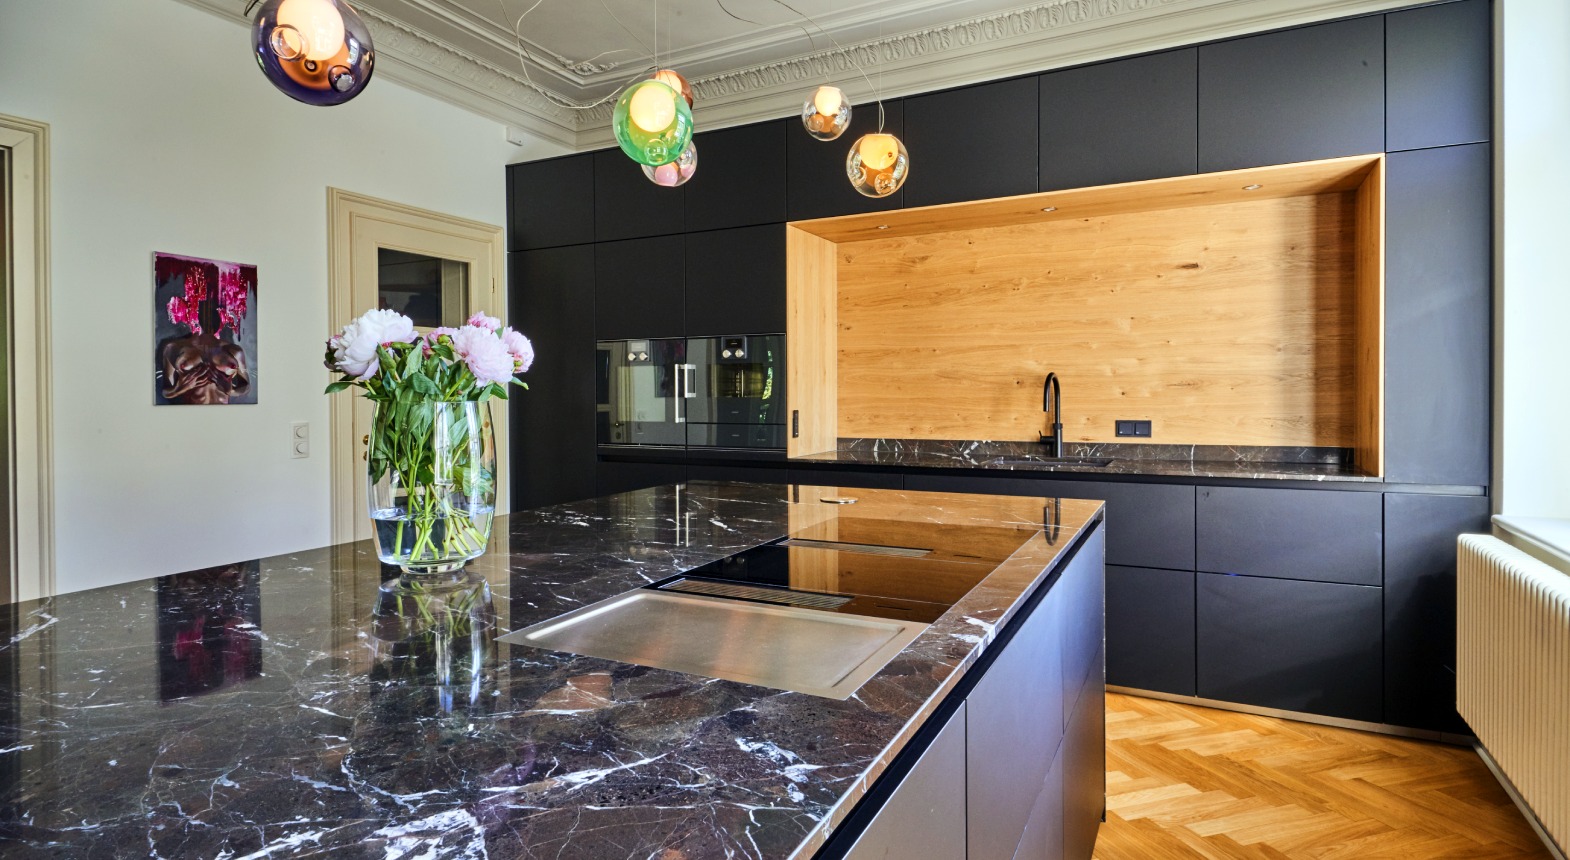 Moderne Küche mit grauen Oberflächen und einer Arbeitsplatte in Marmoroptik